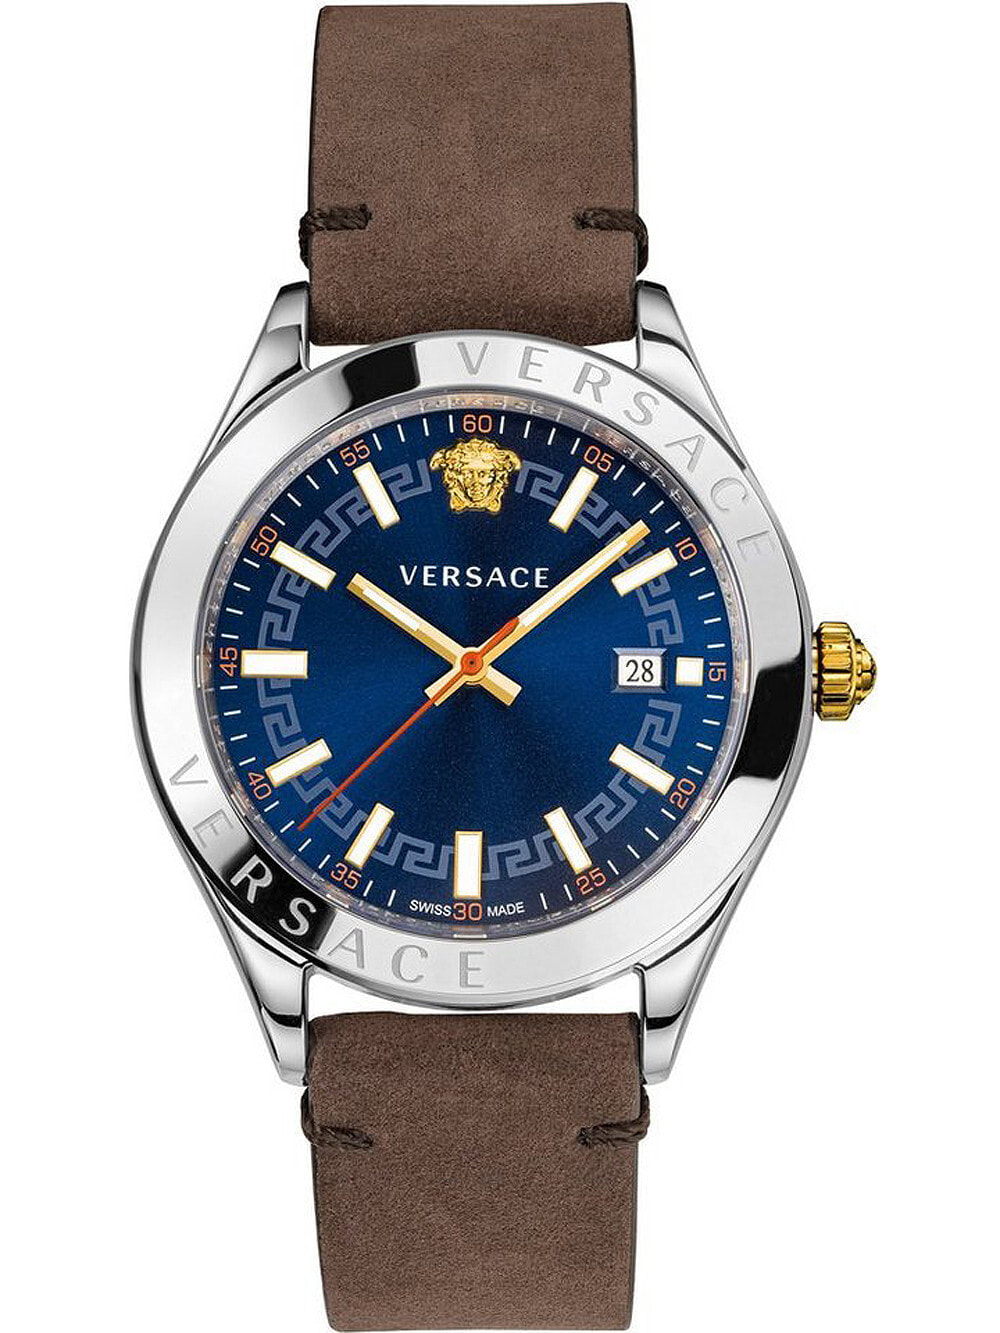 Мужские наручные часы с коричневым кожаным ремешком Versace VEVK00220 Hellenyium mens 42mm 5ATM